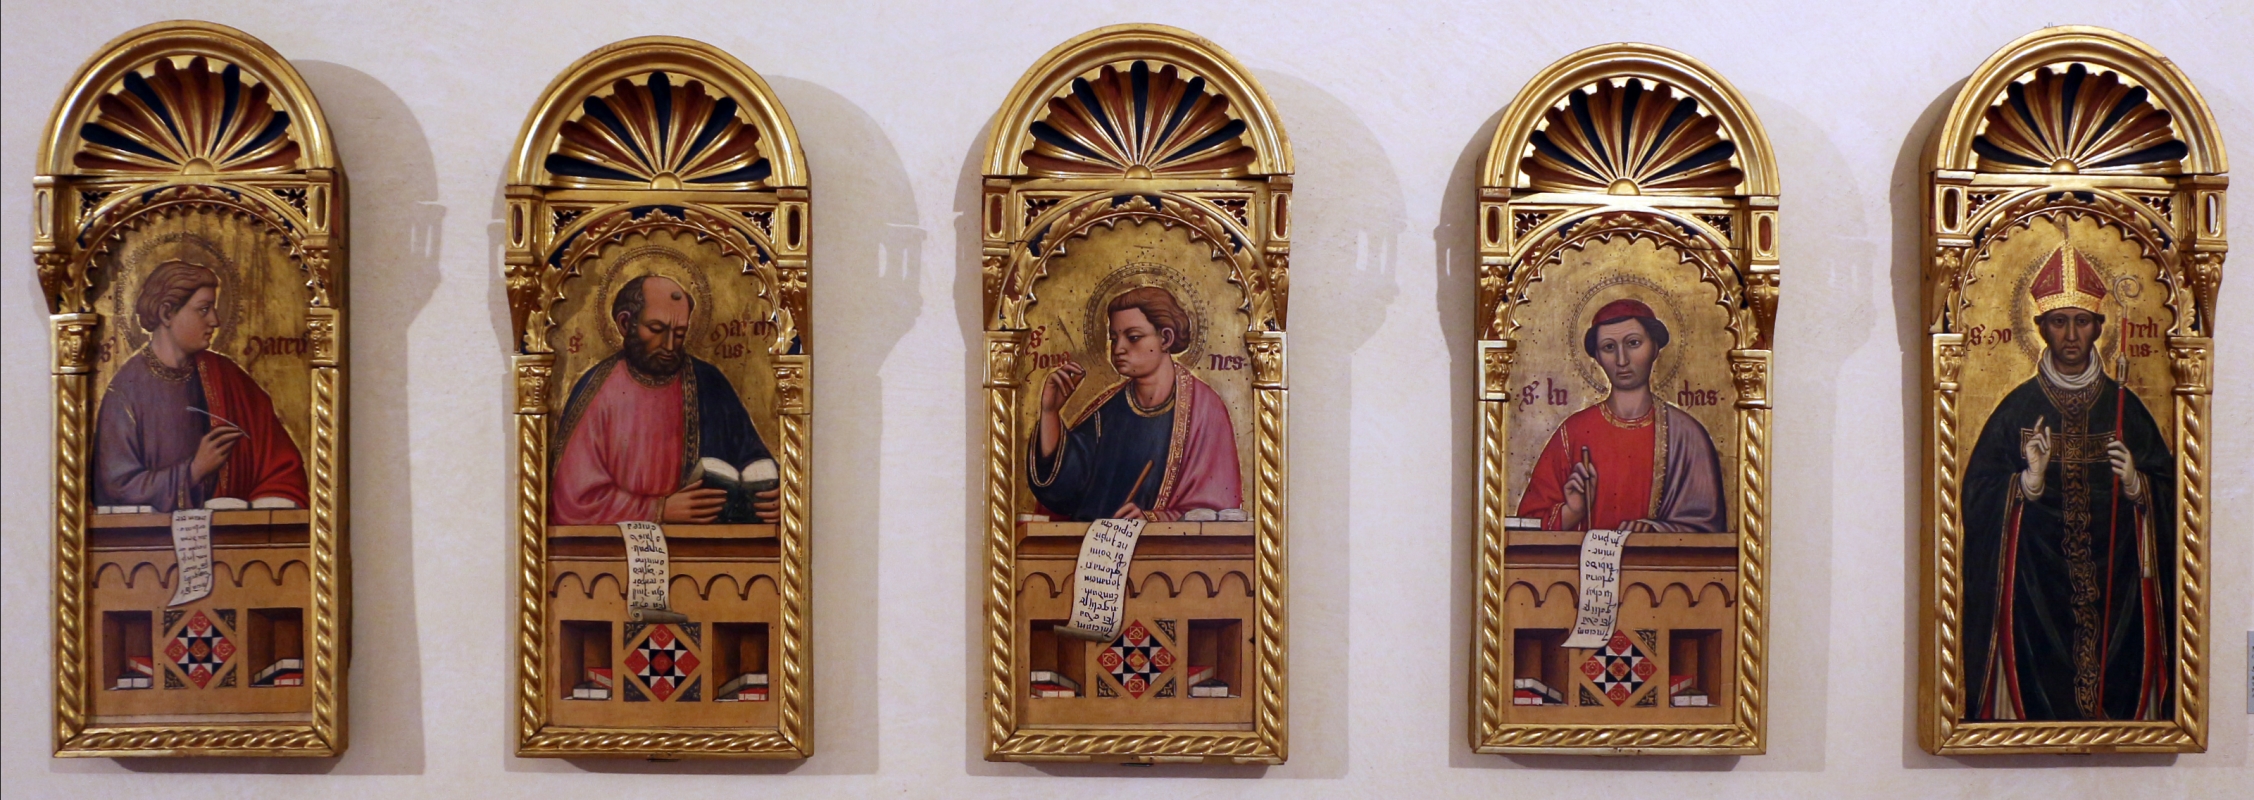 Maestro ferrarese, quattro evangelisti e san maurelio, 1390 ca. 01 - Sailko